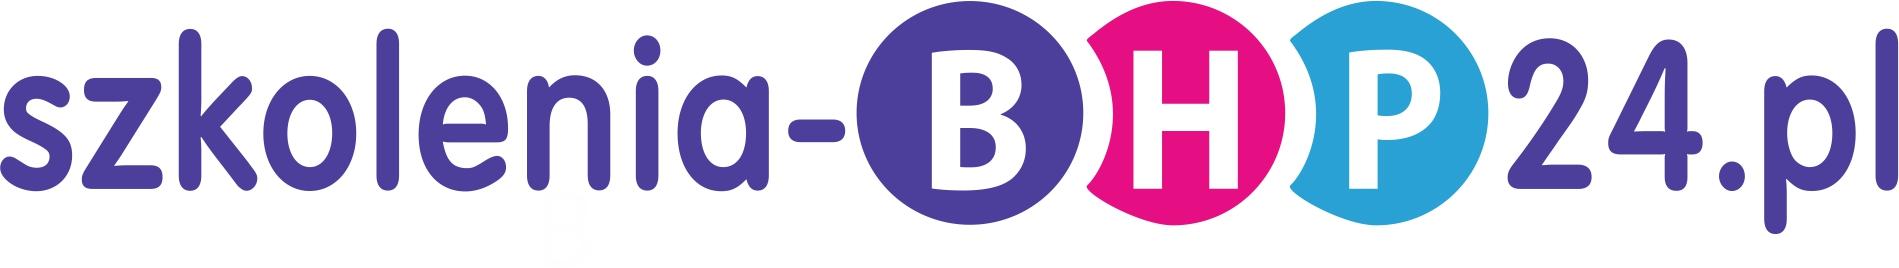 logo szkolenia-bhp24.pl